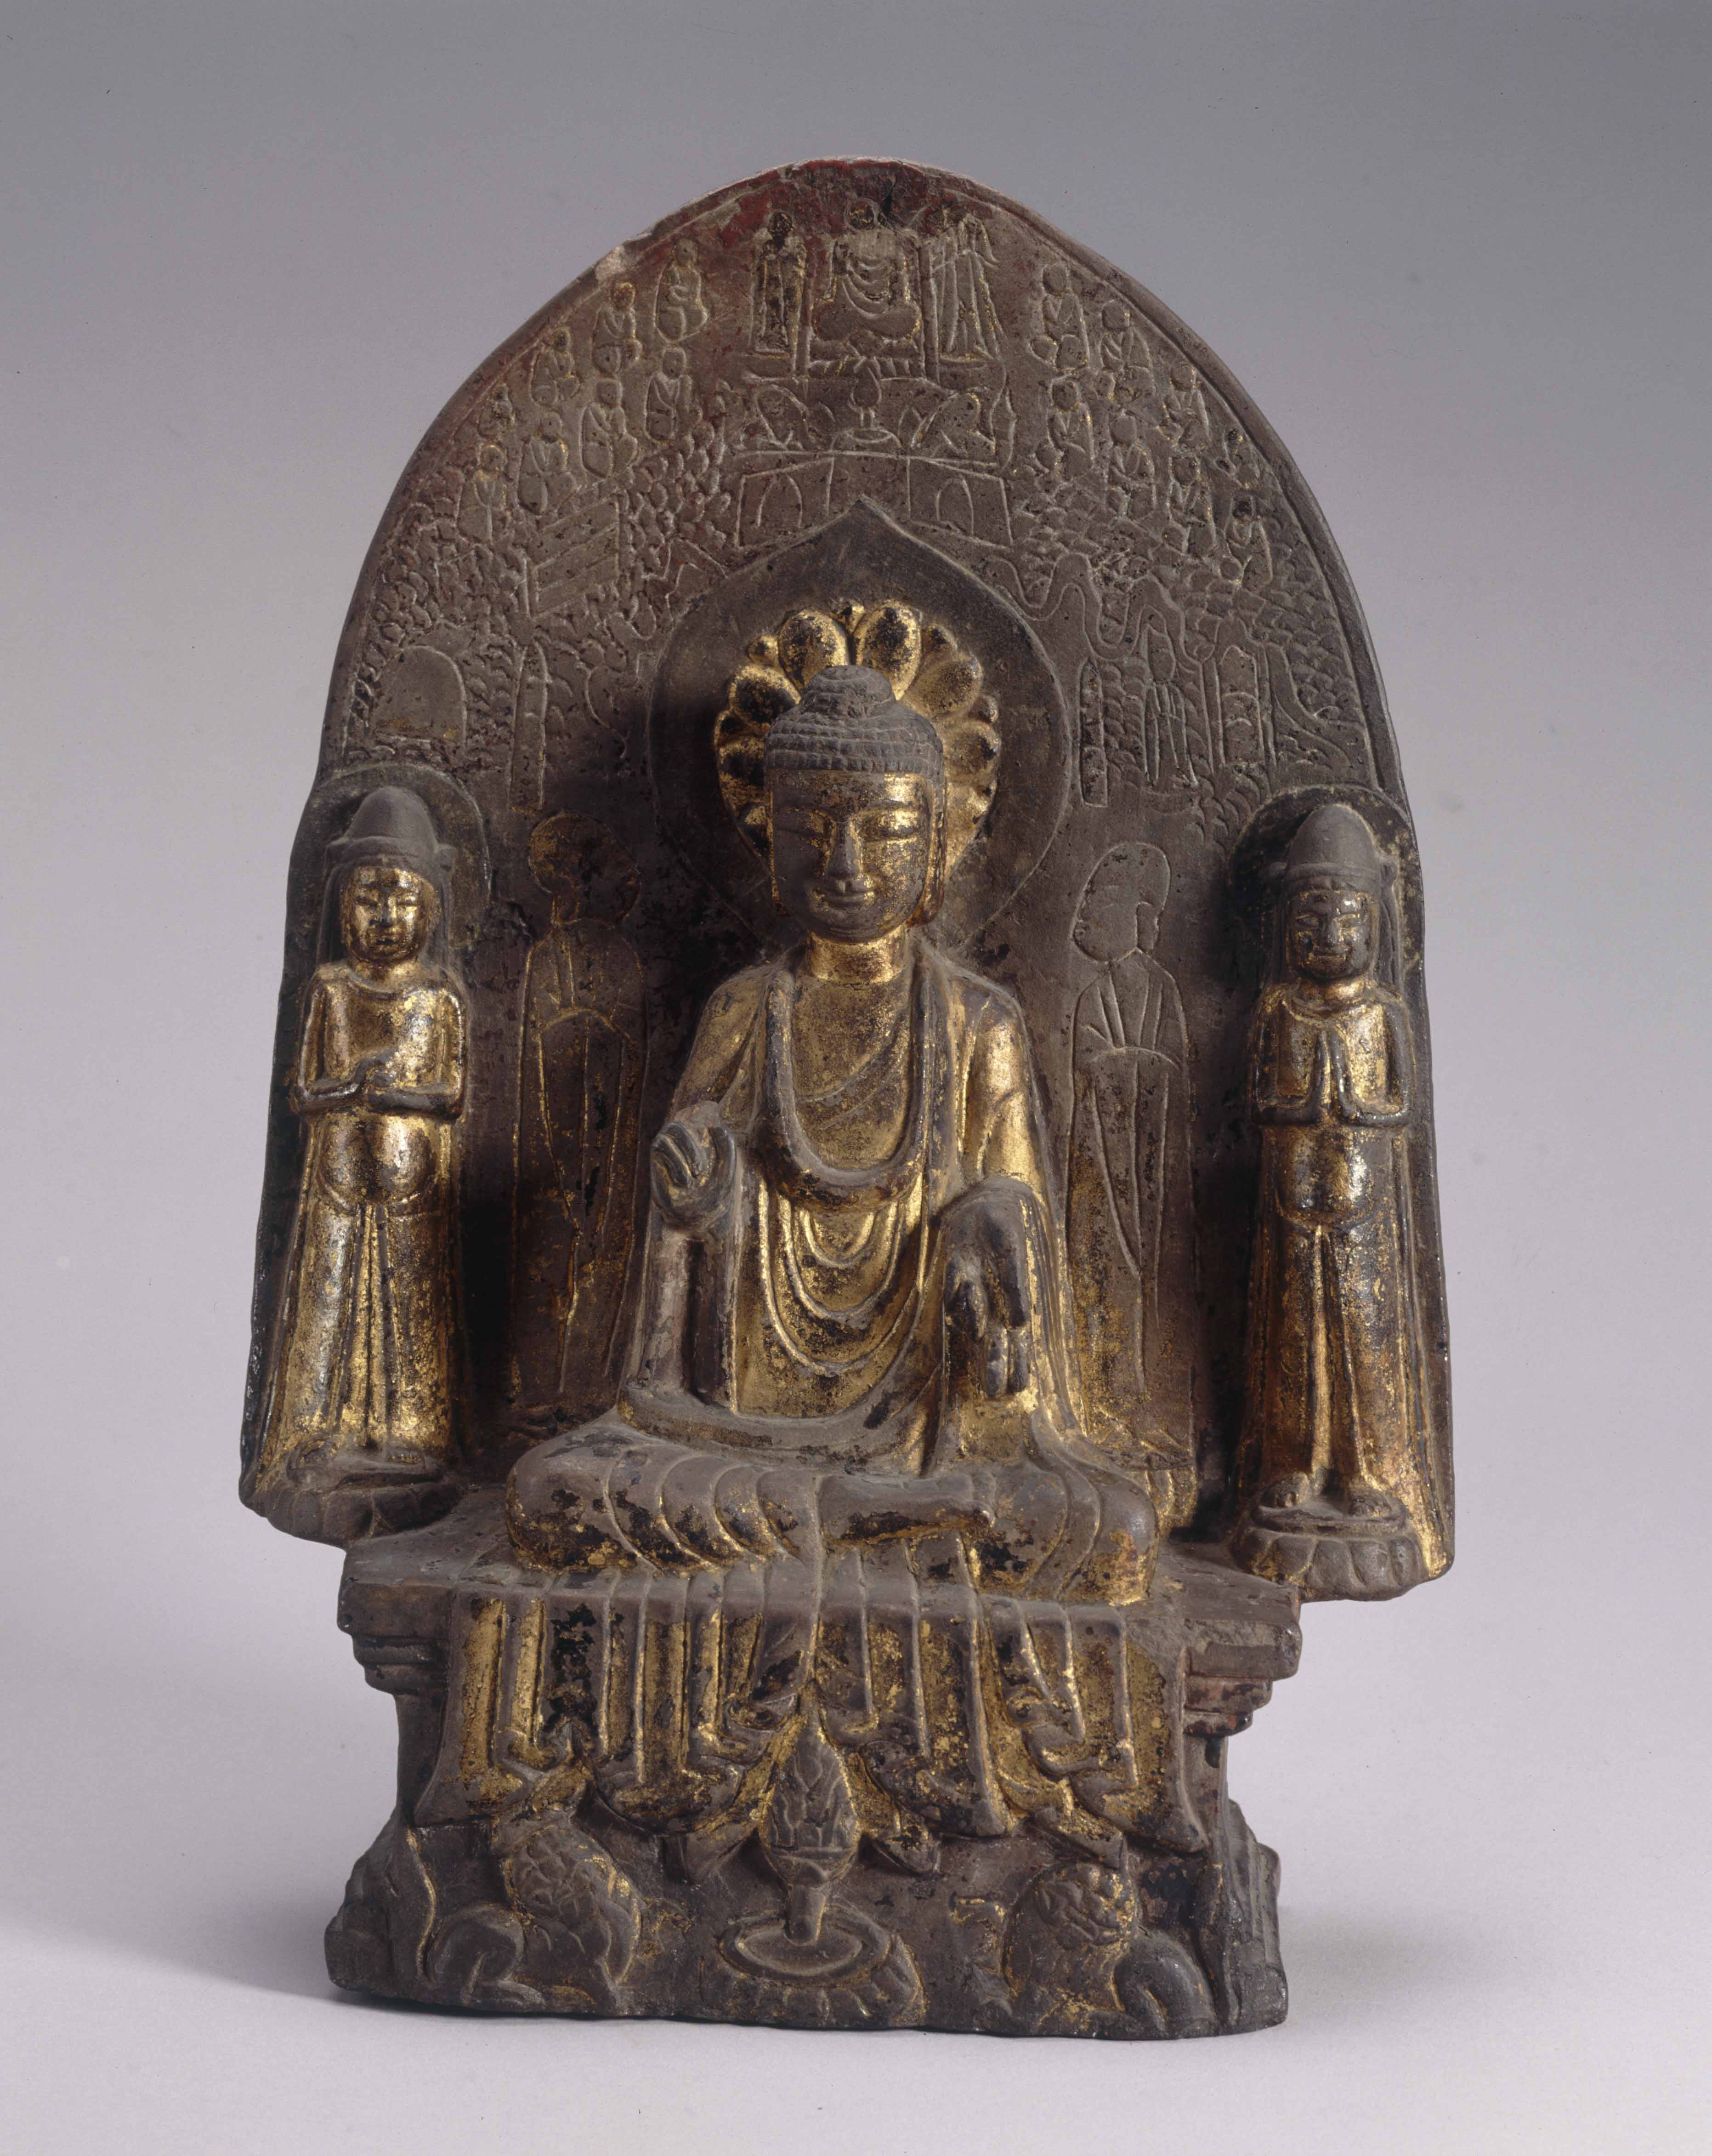 Gold-painted stone Sakyamuni Buddha dedicated by Shi Huiying